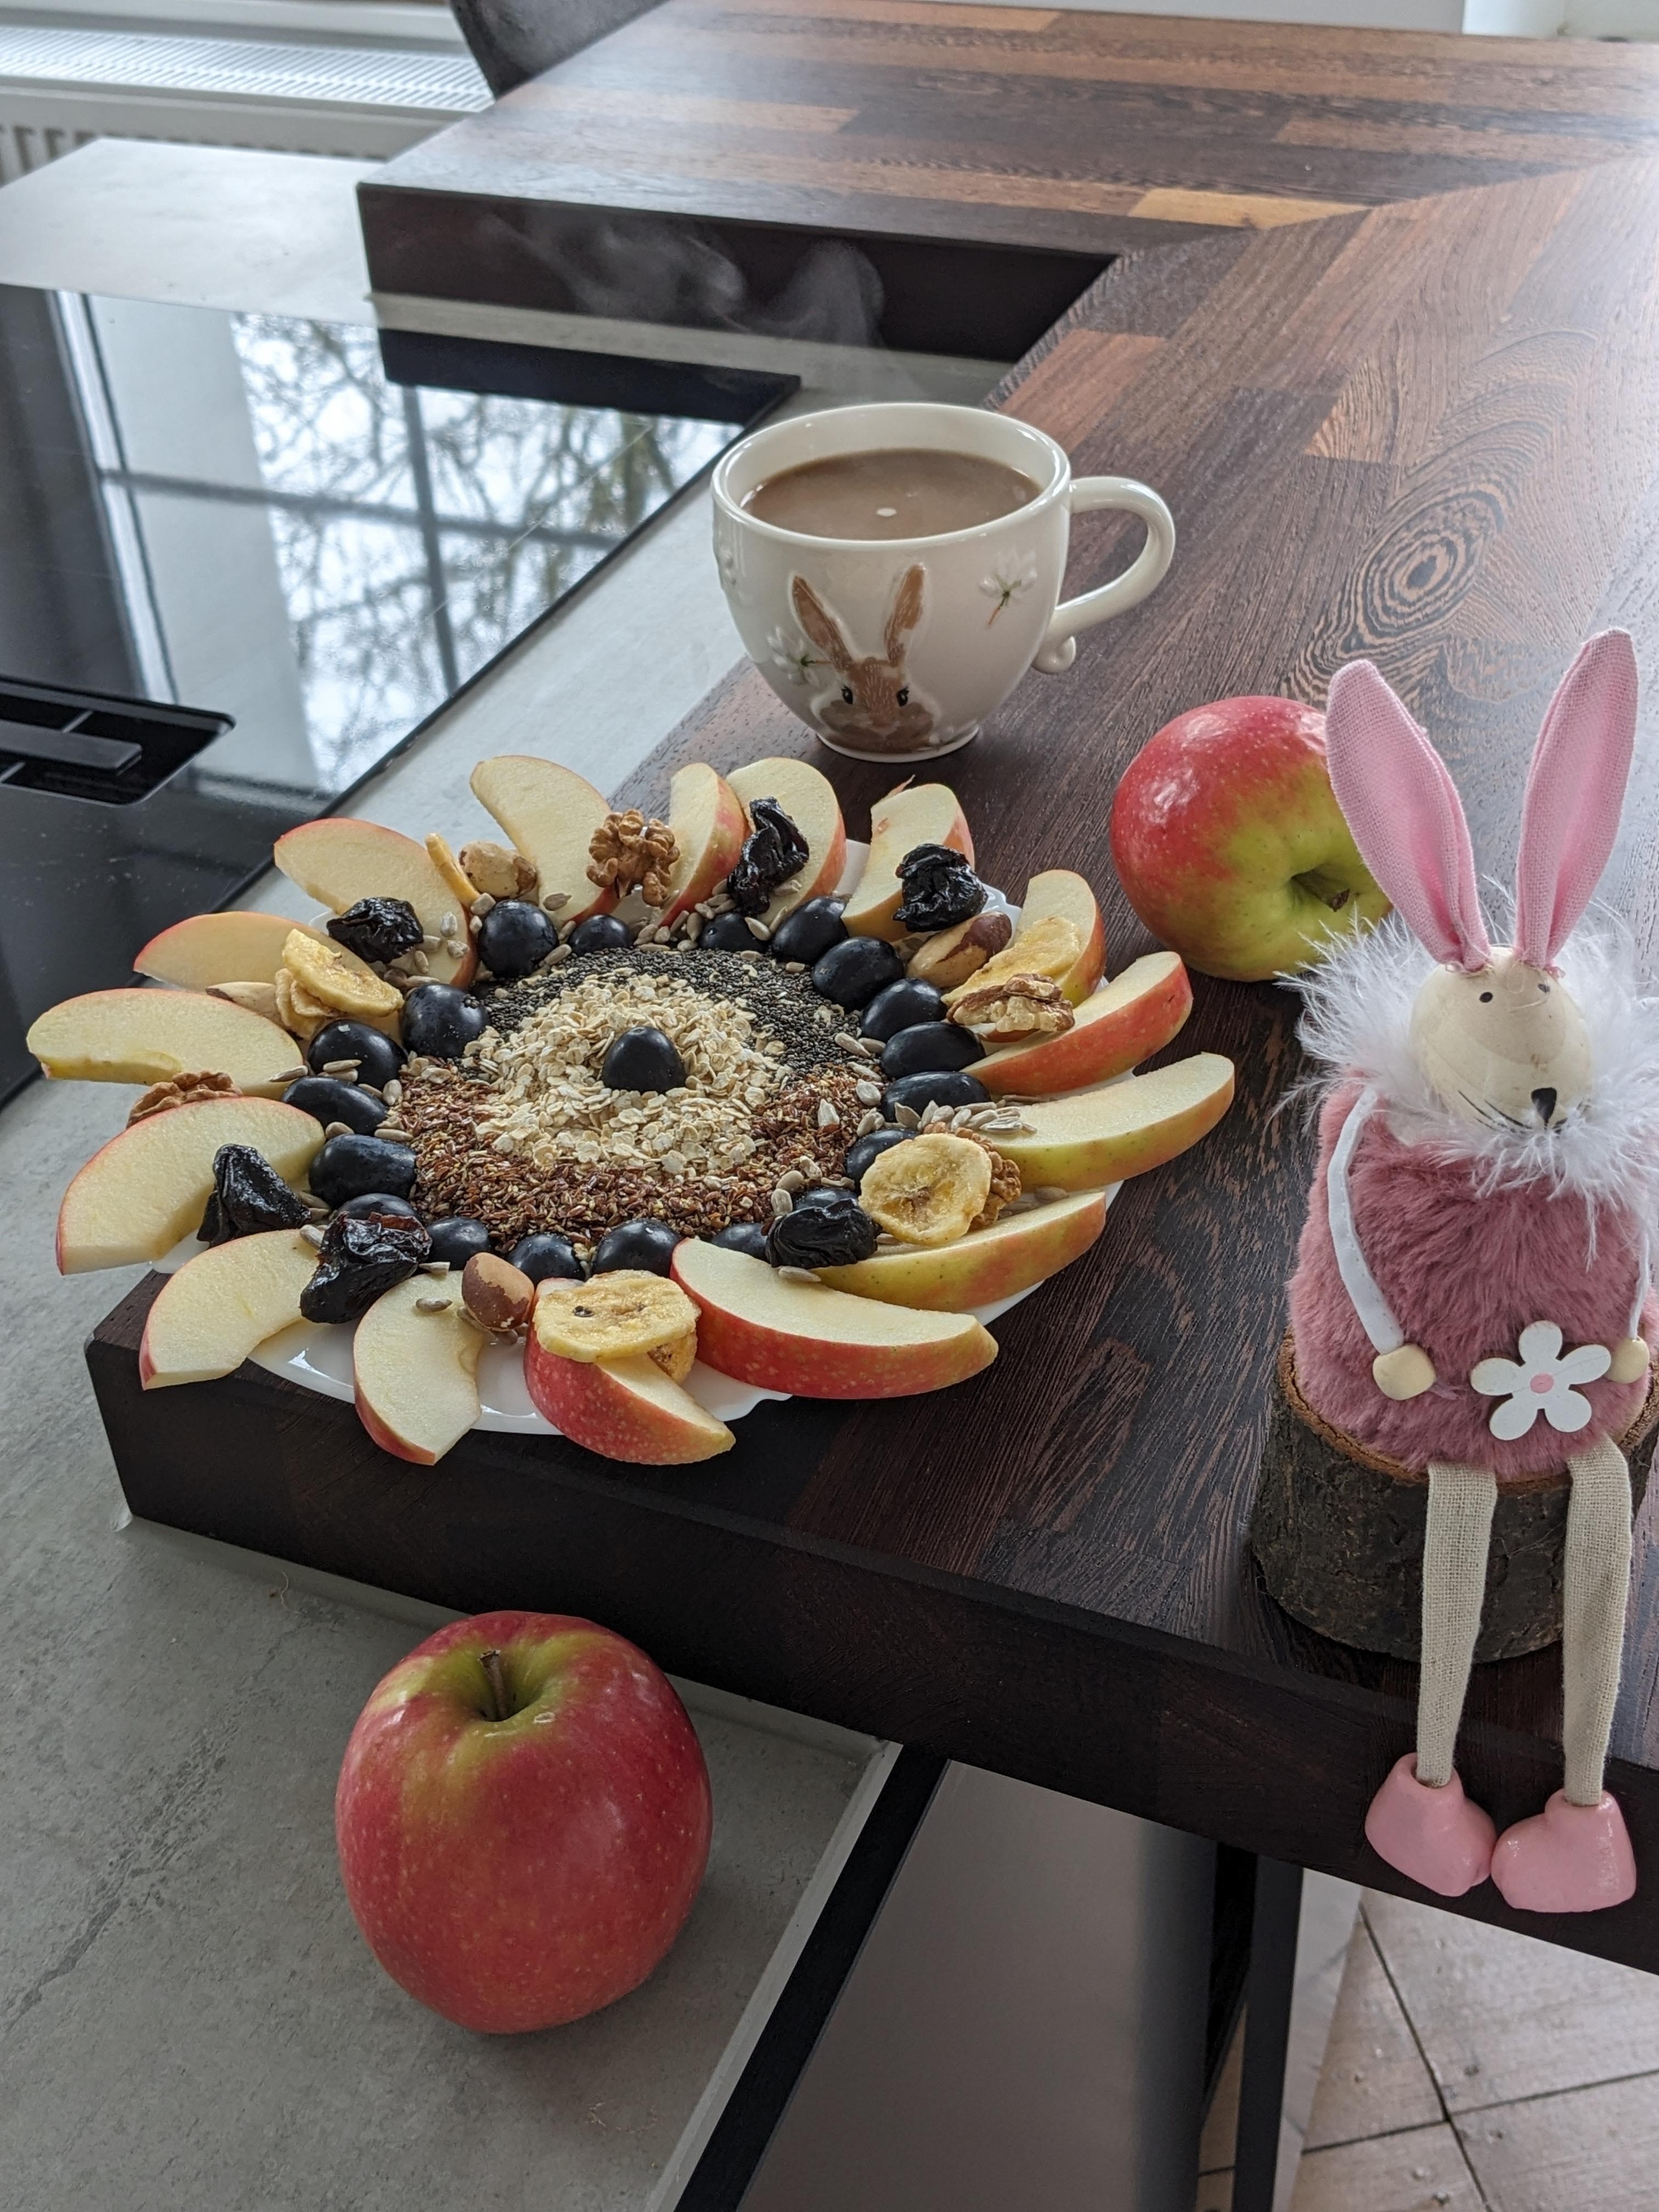 Eine leckere Joghurt-Quark Bowl, mit Äpfeln, Trauben , Haferflocken, 🍎Nüssen und getrocknete Pflaumen. 

#frühstück #foodie #frühlingsdeko #brunch #food #rezeptidee